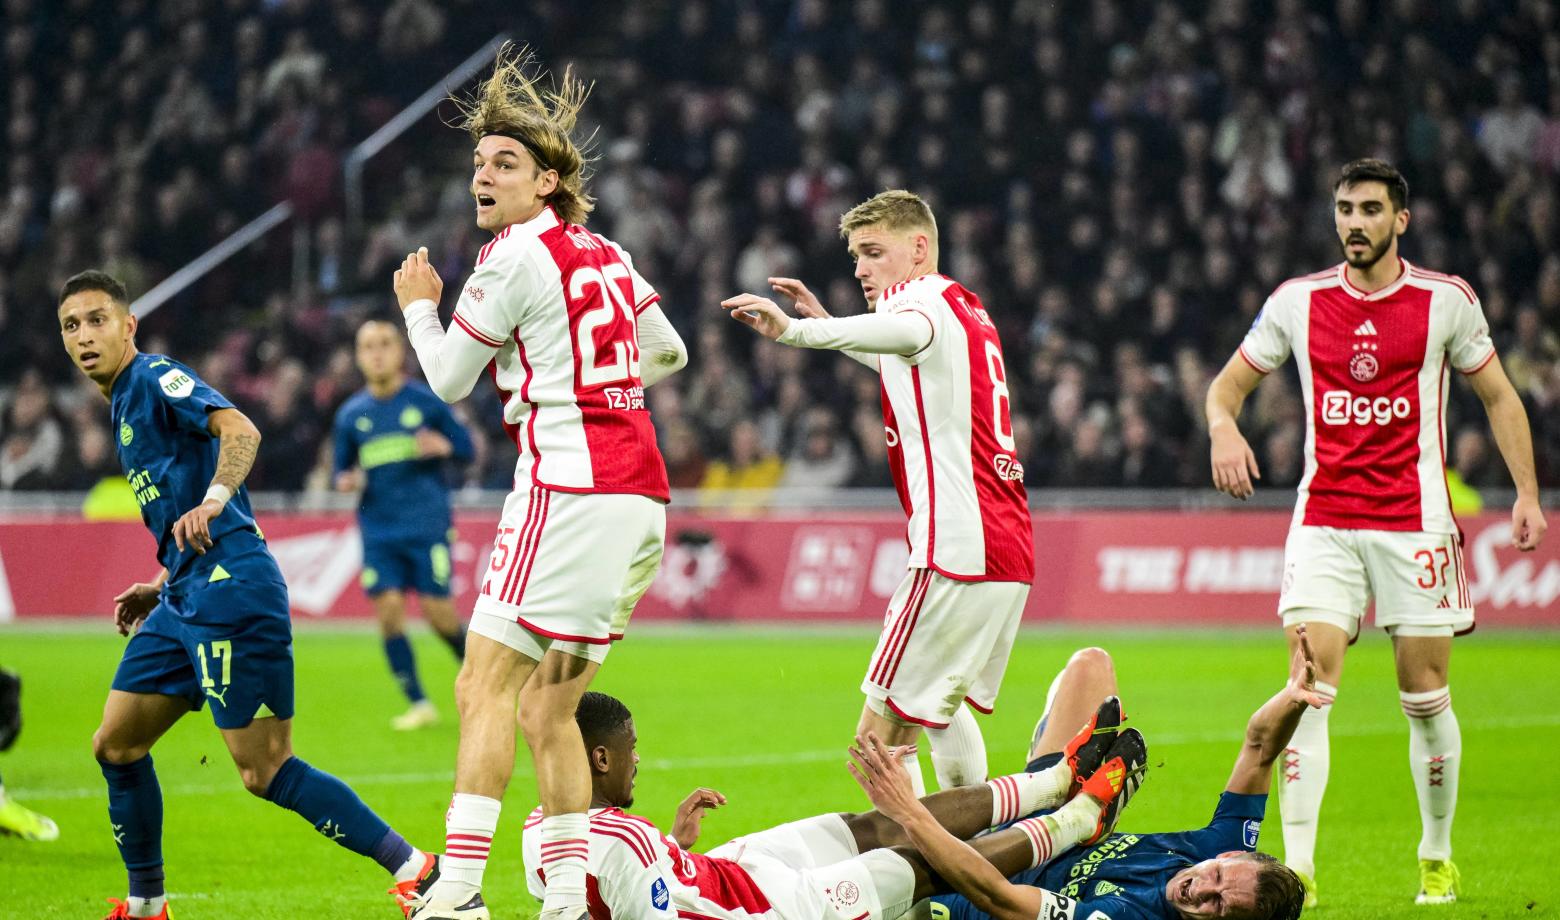 Hugo Borst noemt 'overschatte' speler bij Ajax - FCUpdate